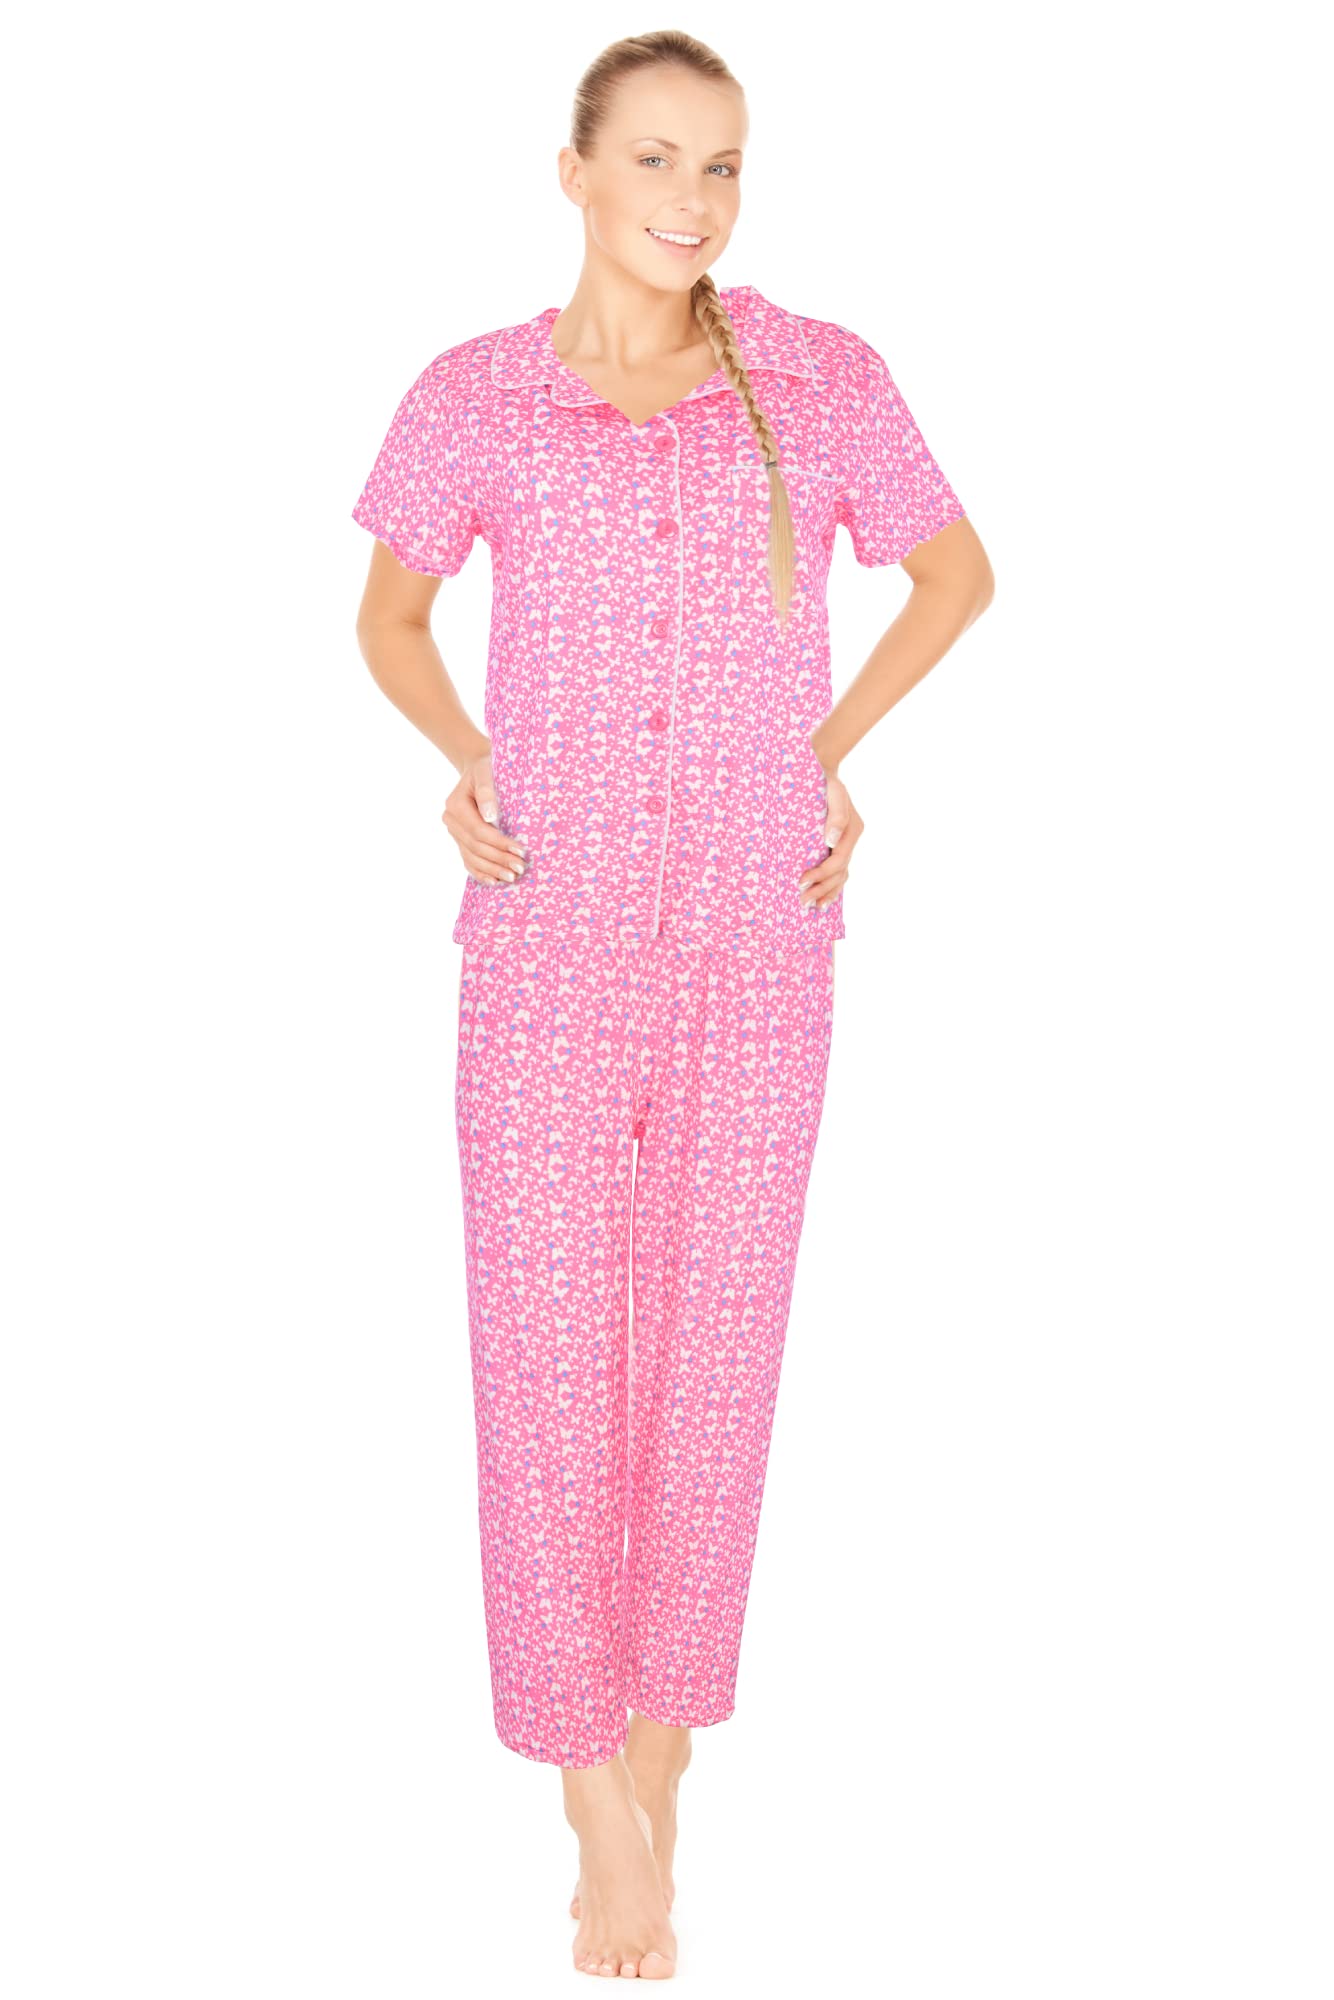 JEFFRICO Womens Pajamas For Women Ankle Length Pajamas Set Sleepwear Soft Pajamas